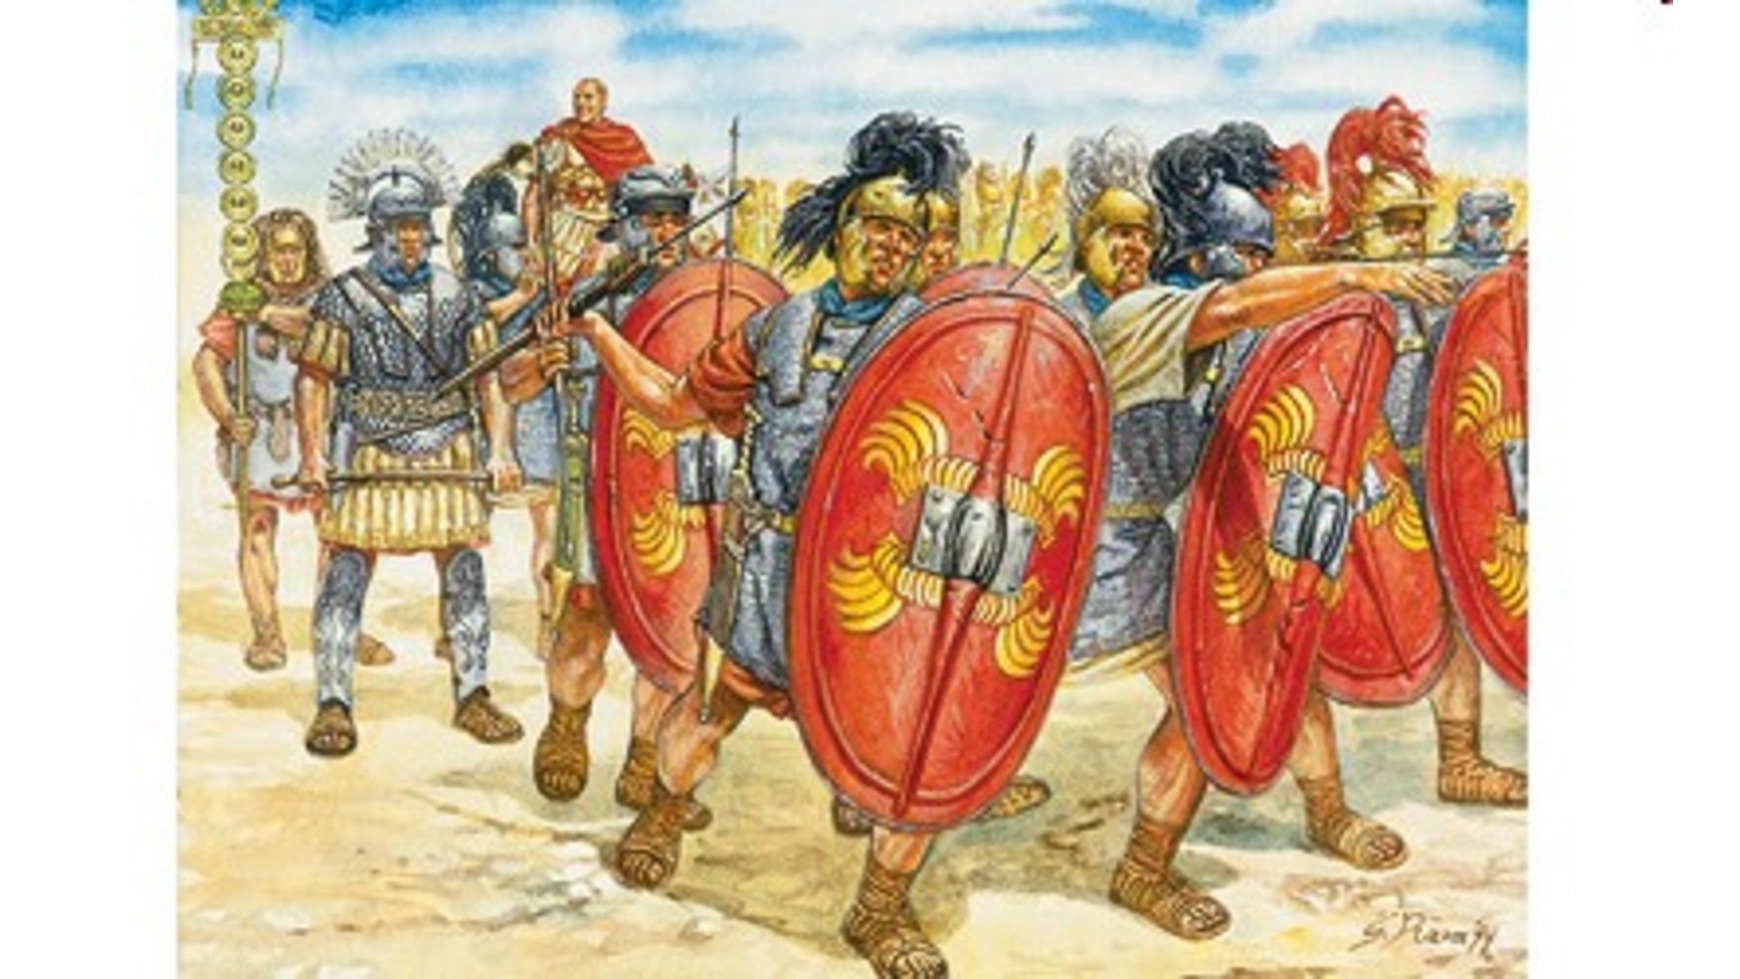 игровой набор солдатиков крепость 1291 лучники крестоносцы 1 крестоносцы 2 сарацины биплант Italeri 1:72 1-й/2-й римский пехотный полк век